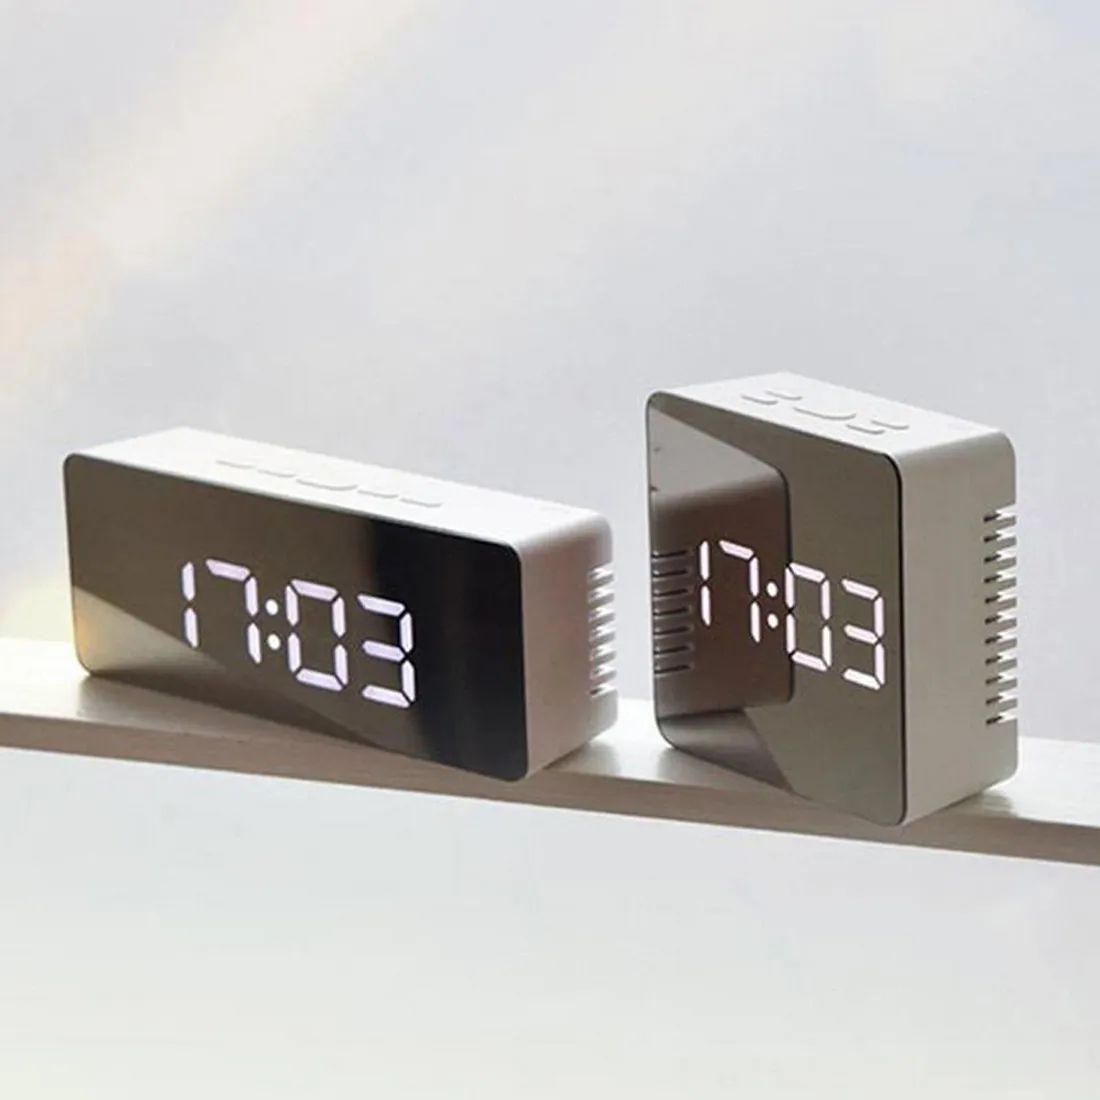 140mm LED Espelho Despertador Digital Relógio Digital Snooze Night Time LED Tabela de Luz Despertador Despertador LJ201204